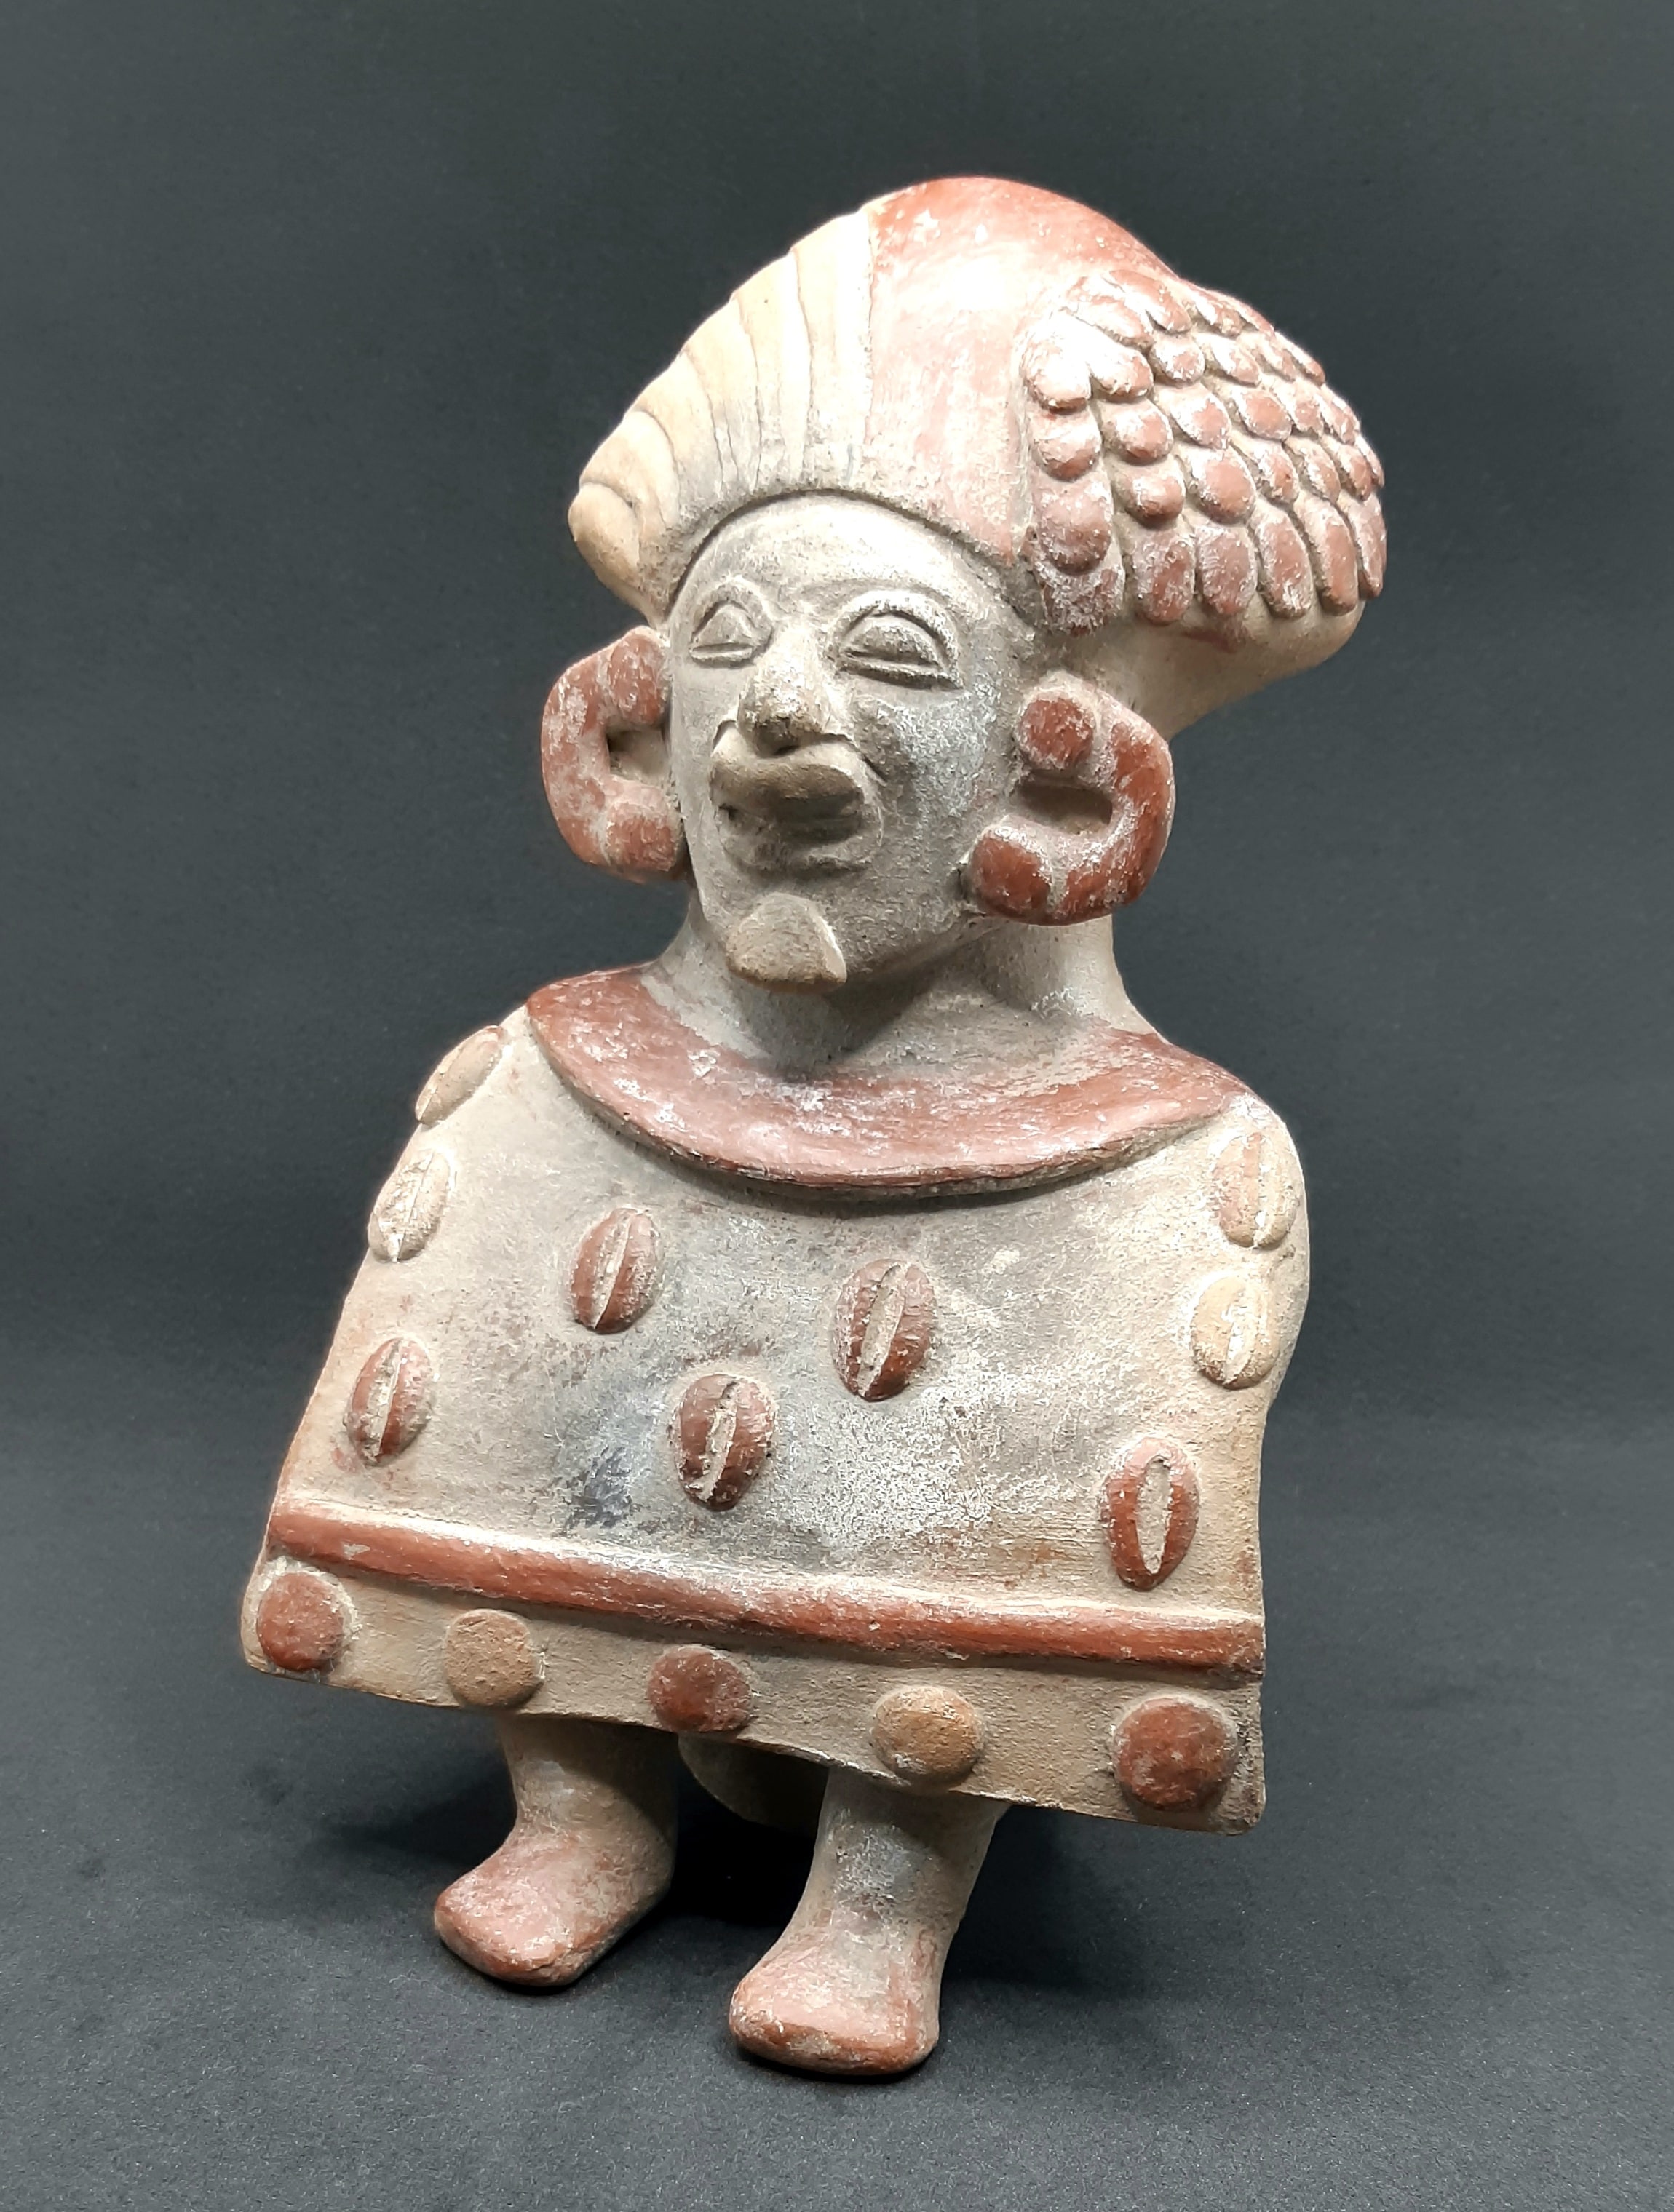 BIZEN中南米美術館 館長が語る古代中南米とカカオの歴史